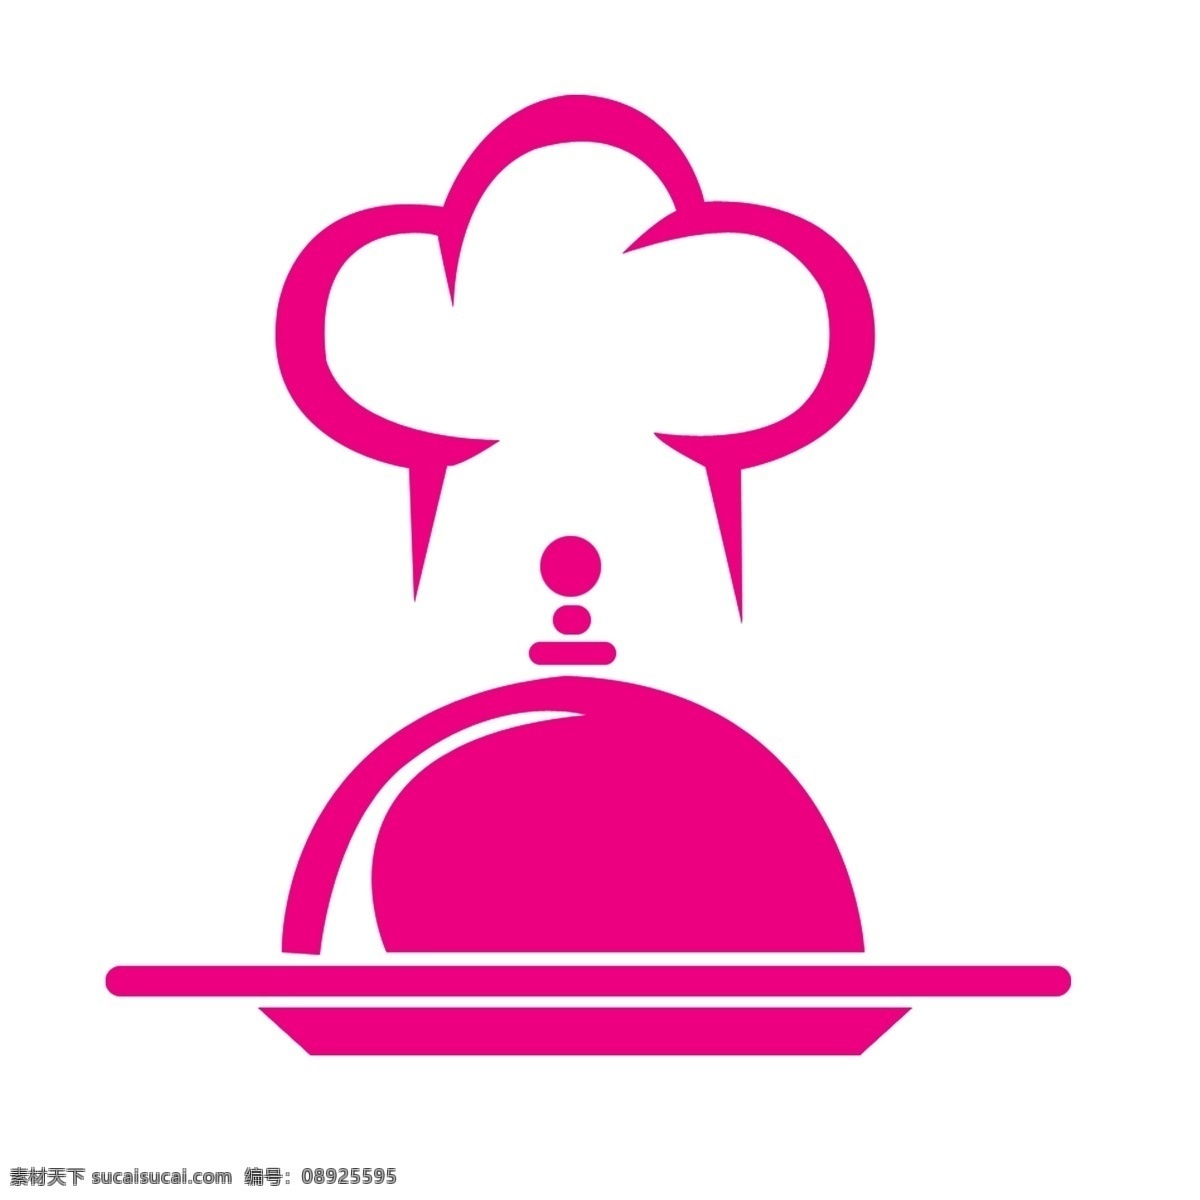 卡通 西餐 插画 绘图 卡通西餐插画 粉色的锅盖 粉色标志插画 创意美食 卡通美食插画 西方食物